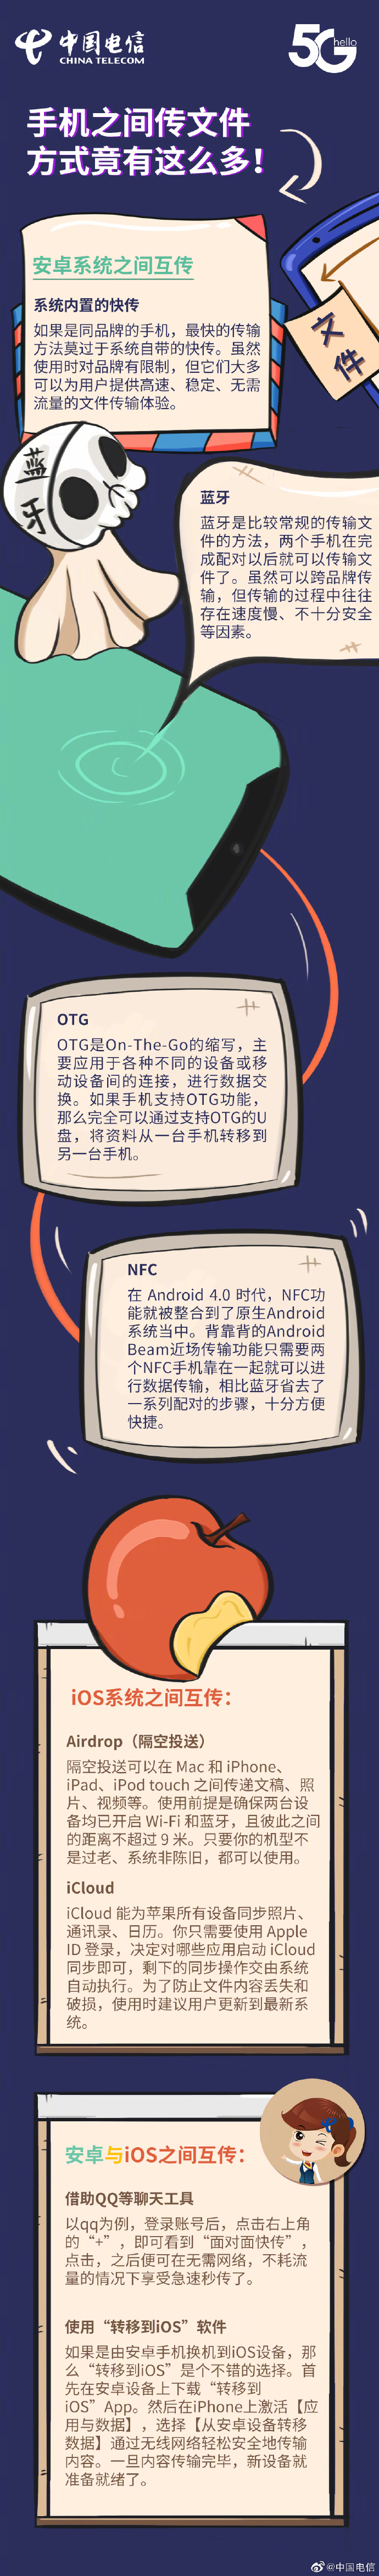 中国电信详解手机之间传文件方式